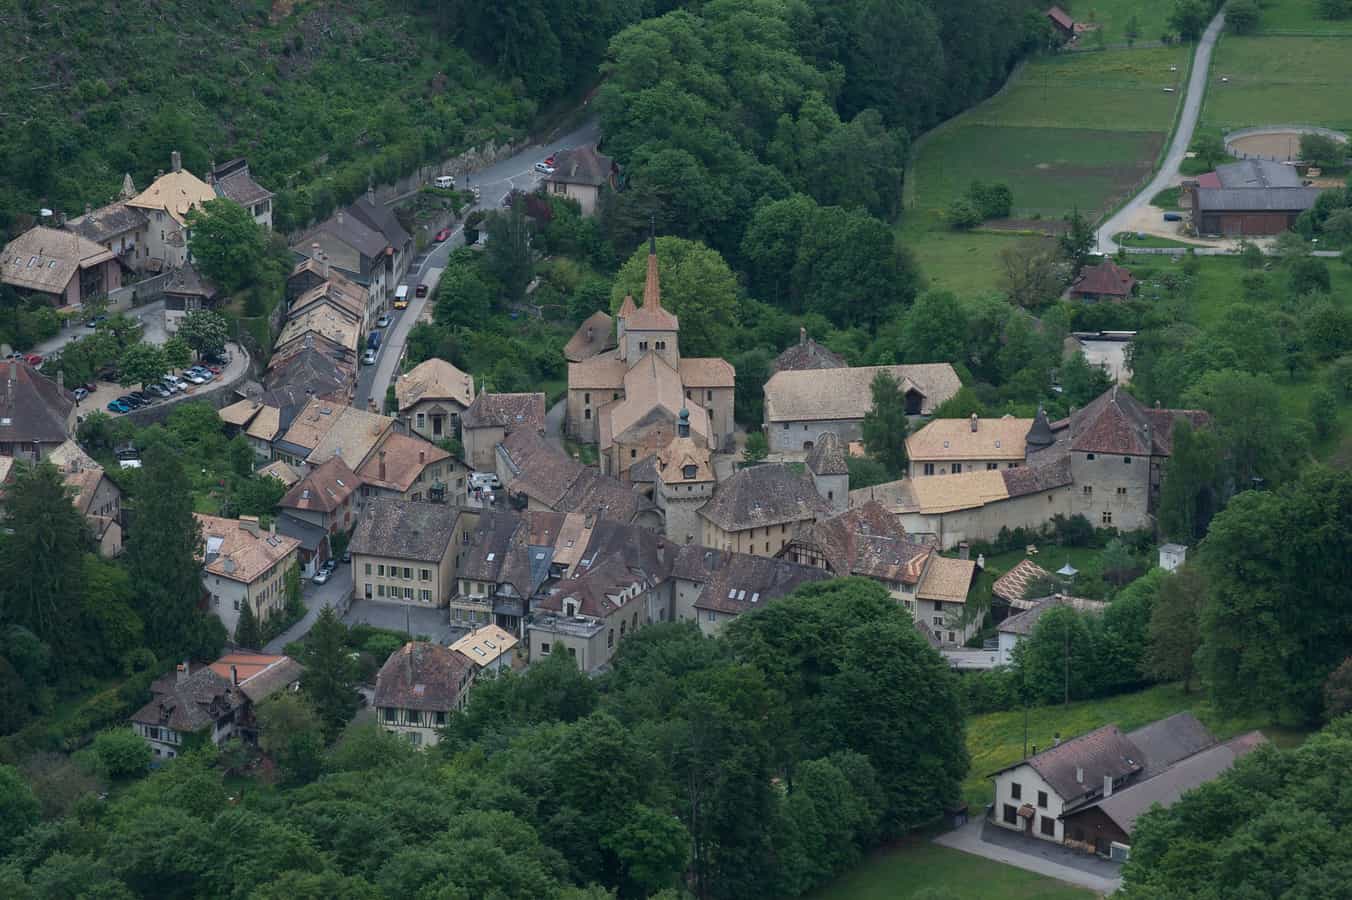 Le village médiéval de Romainmôtier, regroupé autour de son église abbatiale romane.